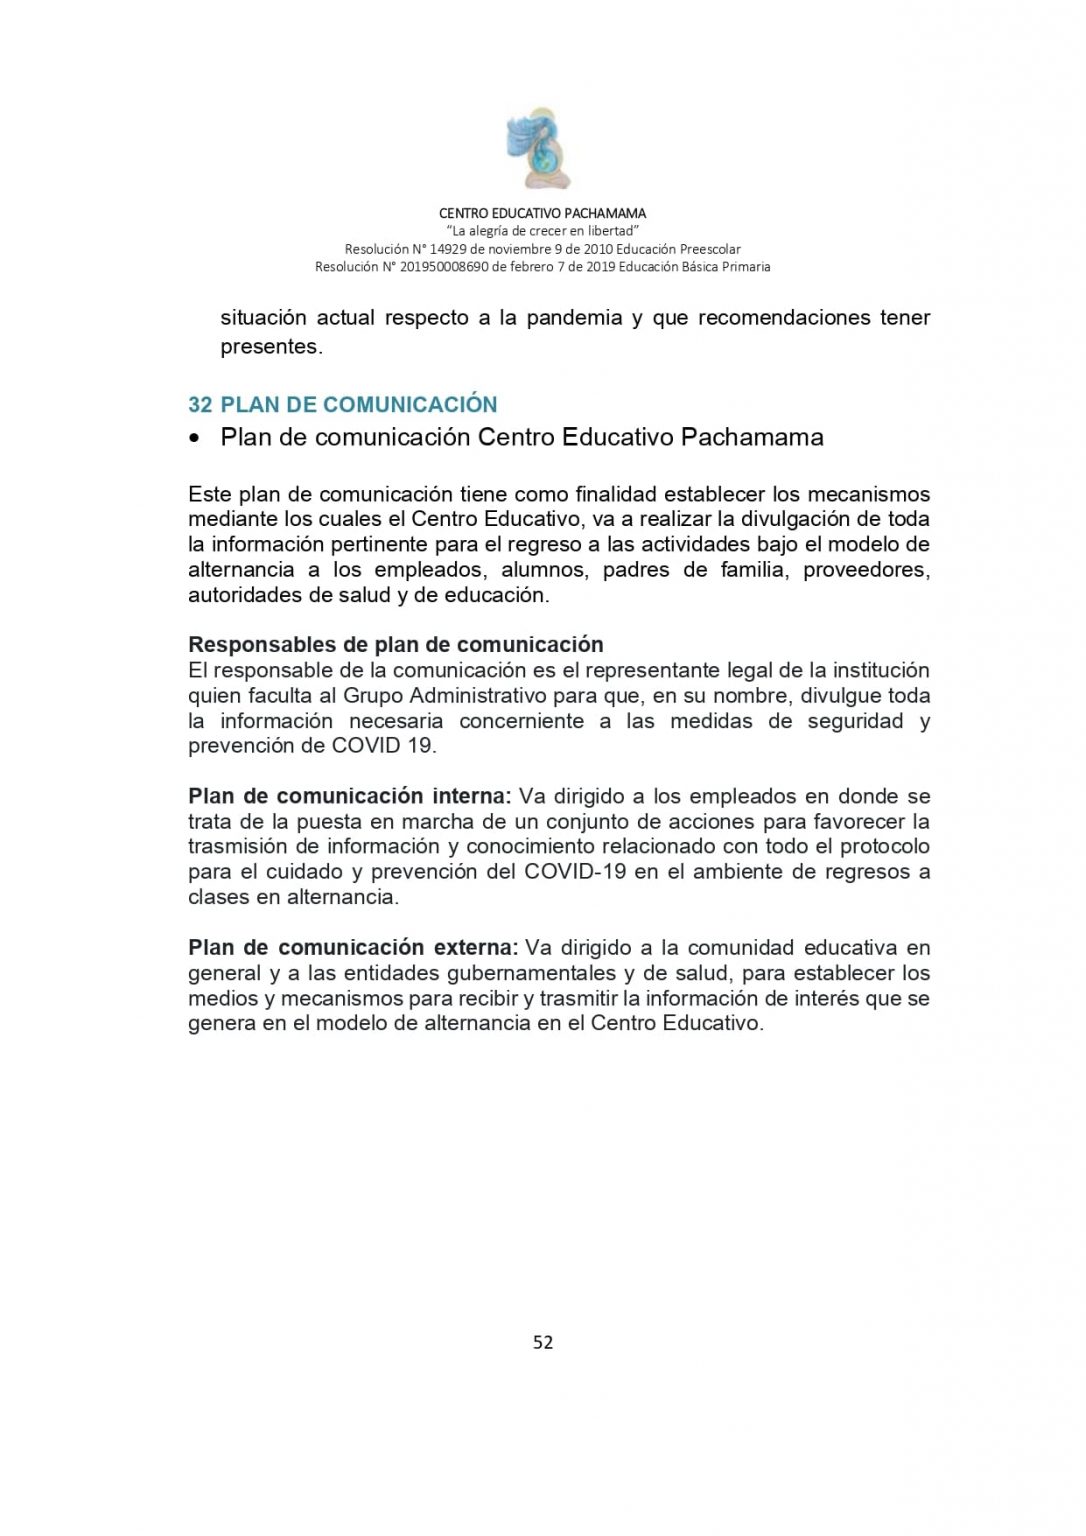 PROTOCOLO DE BIOSEGURIDAD PACHAMAMA Última Versión (3)-convertido_page-0052